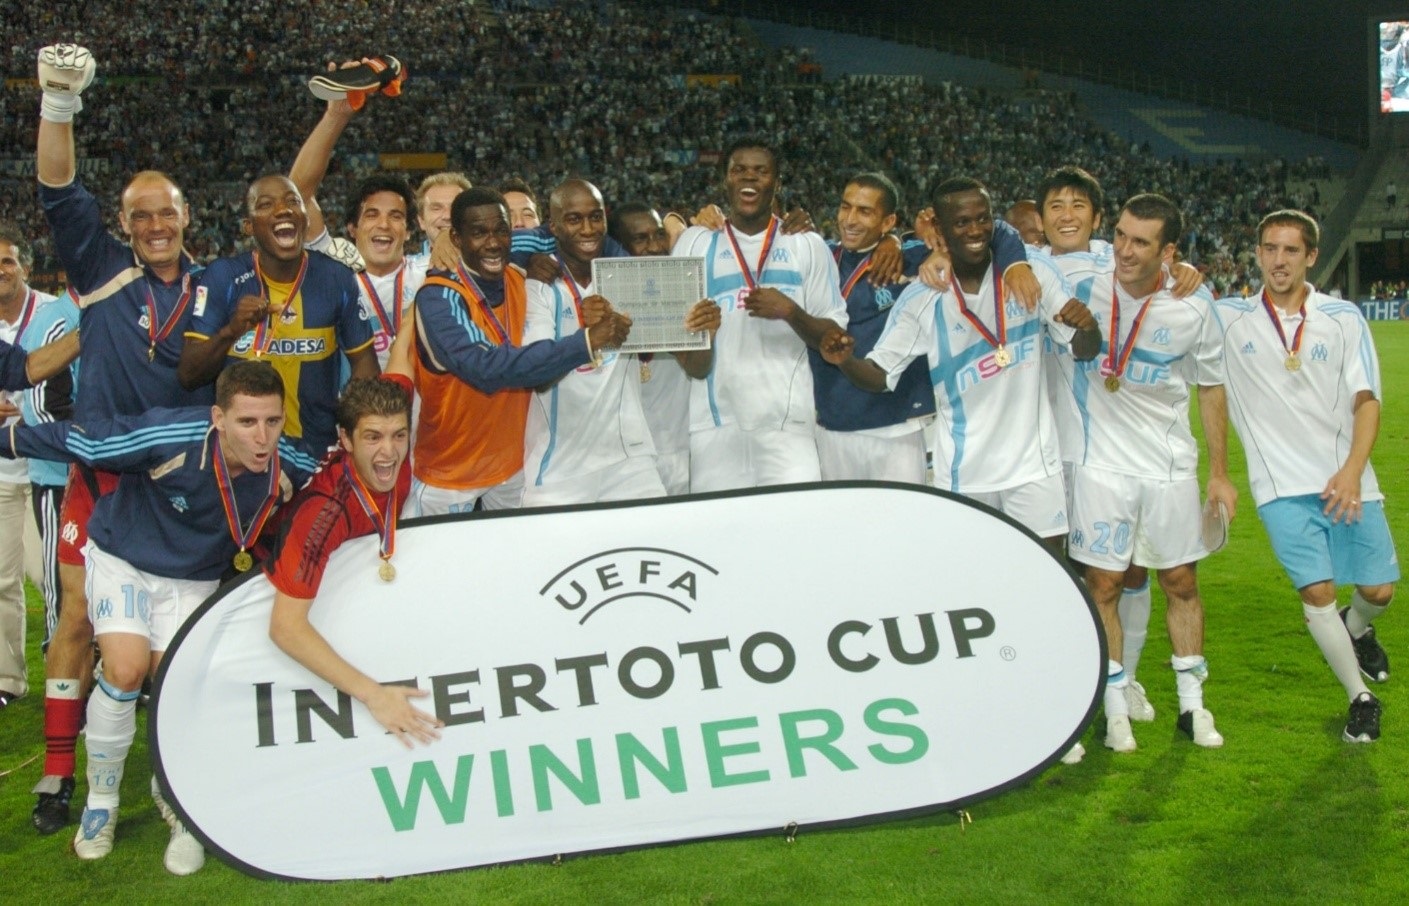 
نادي مارسيليا أحد الفِرق الثلاثة المتأهلة لليوربا ليغ من خلال كأس إنترتوتو عام 2005 (مواقع التواصل)
